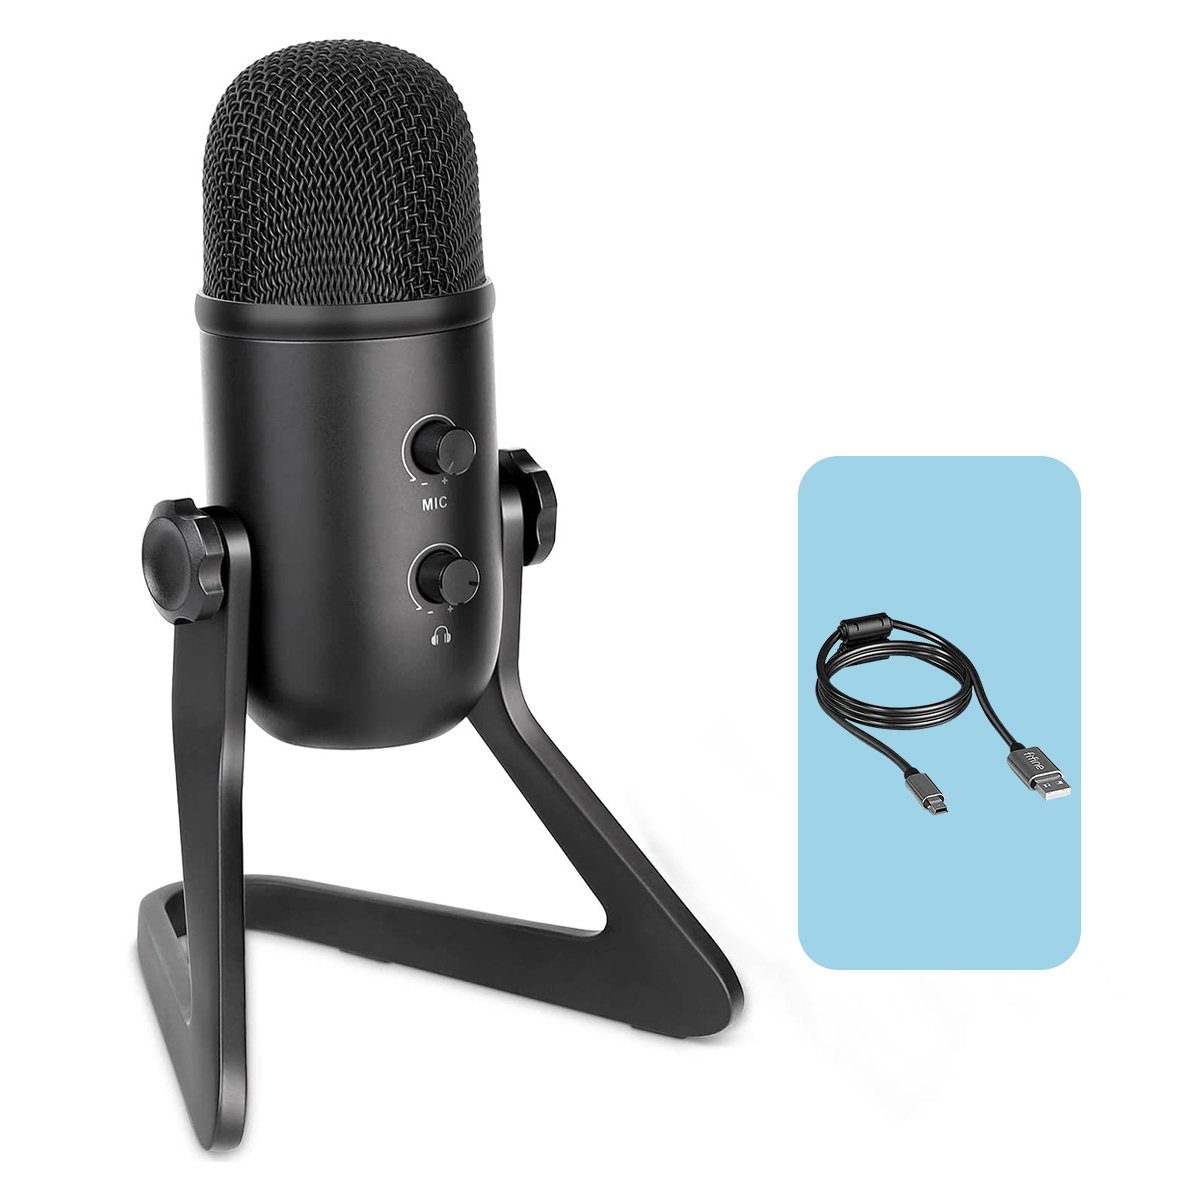 FIFINE Mikrofon »USB Kondensator Mikrofon in Studioqualität mit Ständer,  Mikrofon Streaming Gaming für PC Mac PS4 PS5 mit Stummschalttaste,  Lautstärkerregler und Popfilter« online kaufen | OTTO